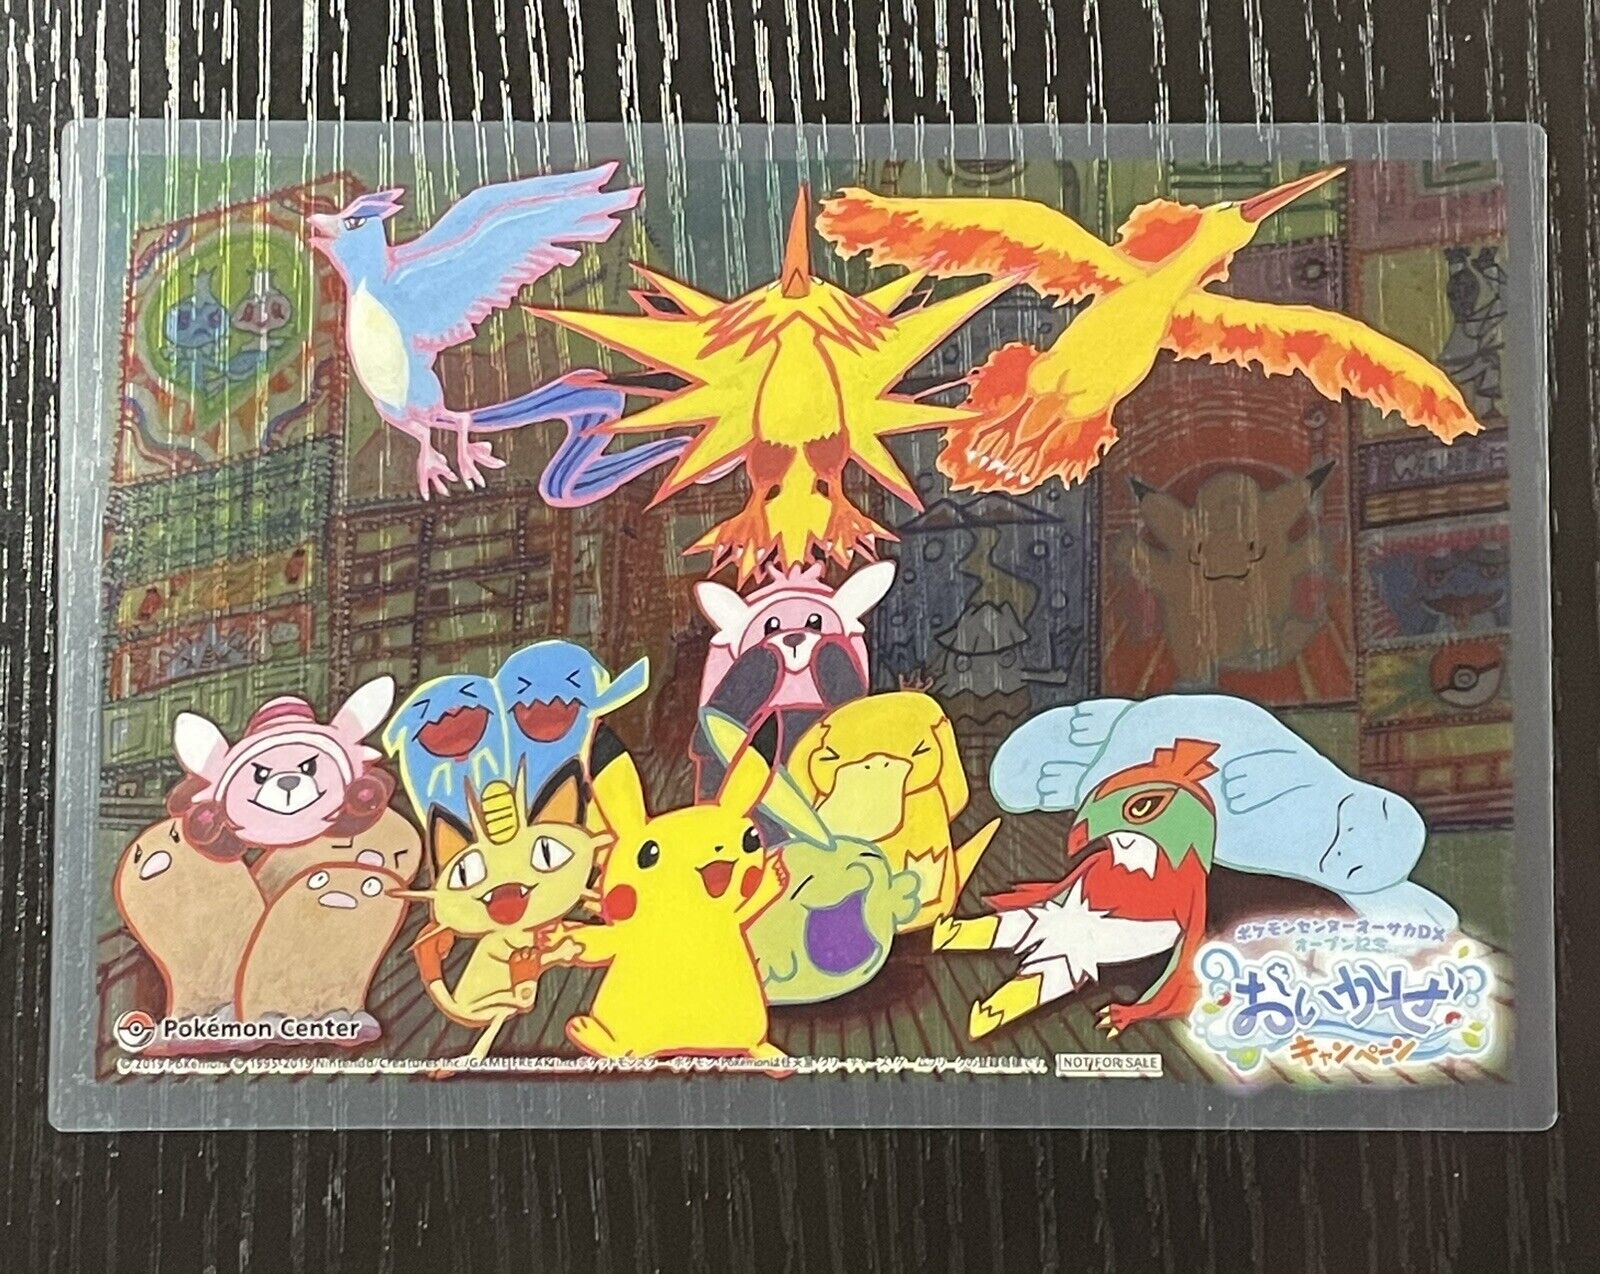 Pokemon Center Japan Tomokazu Komiya Clear Card Limited